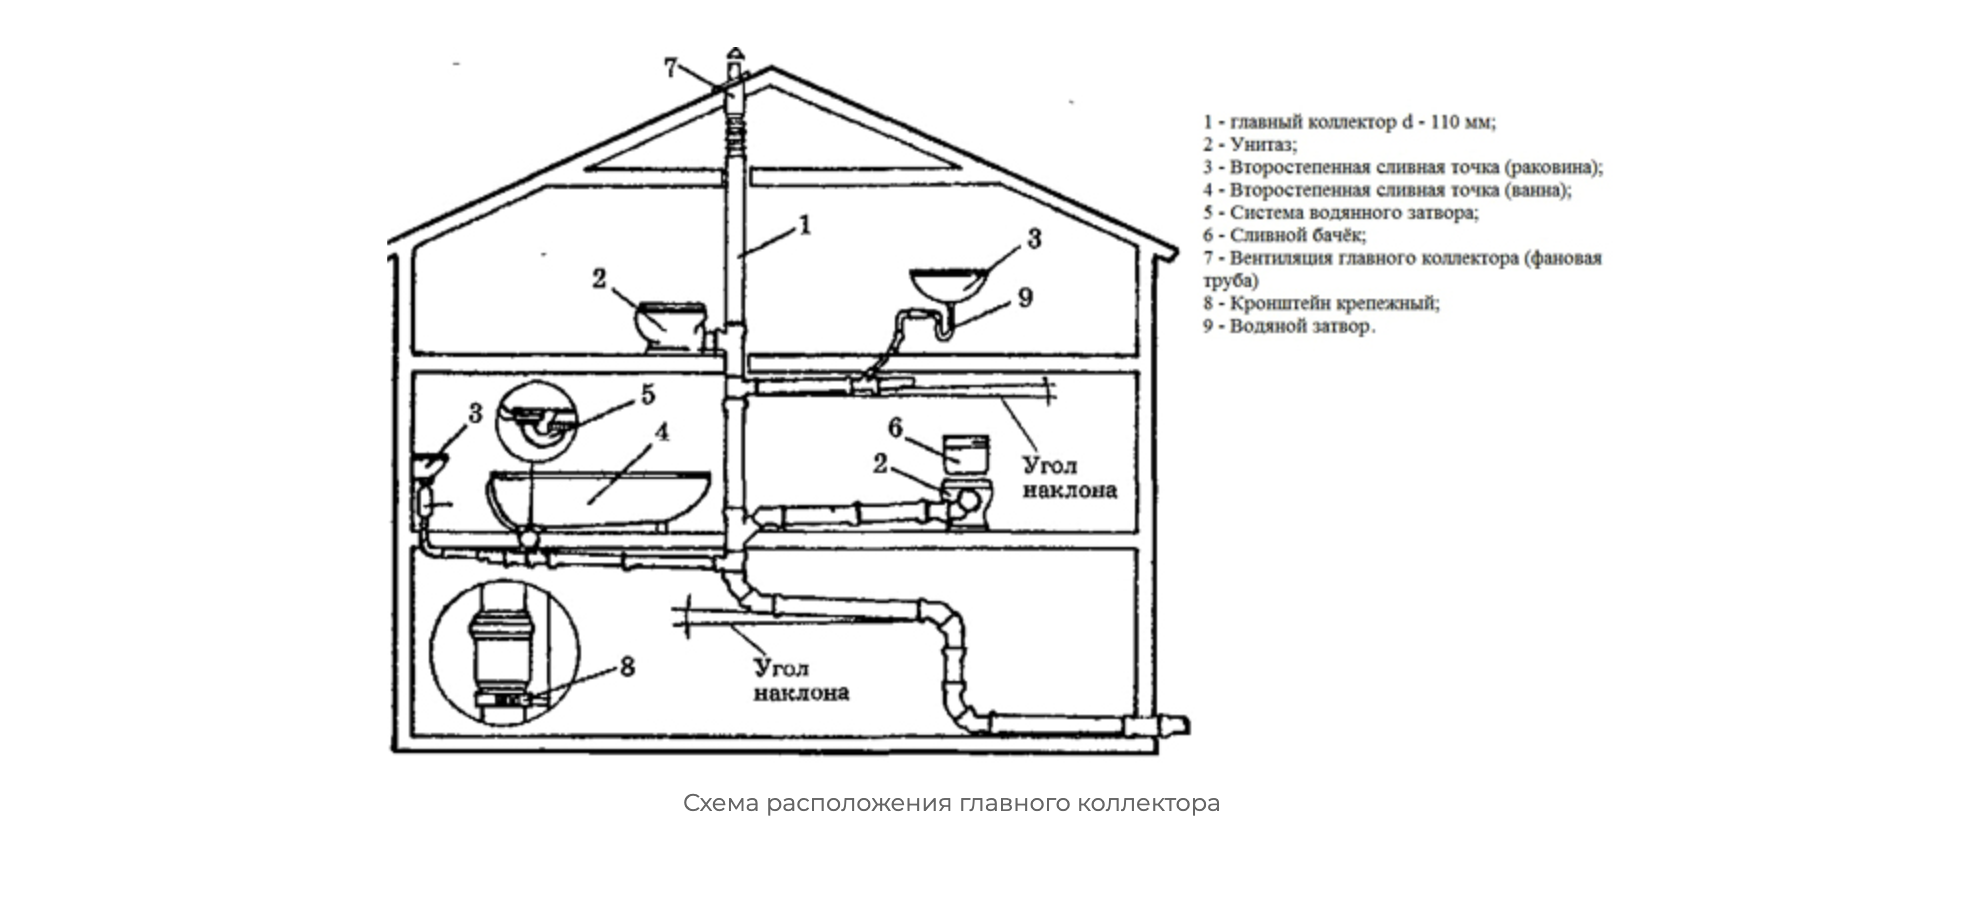 Пример разводки внутренней канализации. Как видим, везде соблюдается угол наклона для естественного стока воды. Источник: aquatic-home.ru